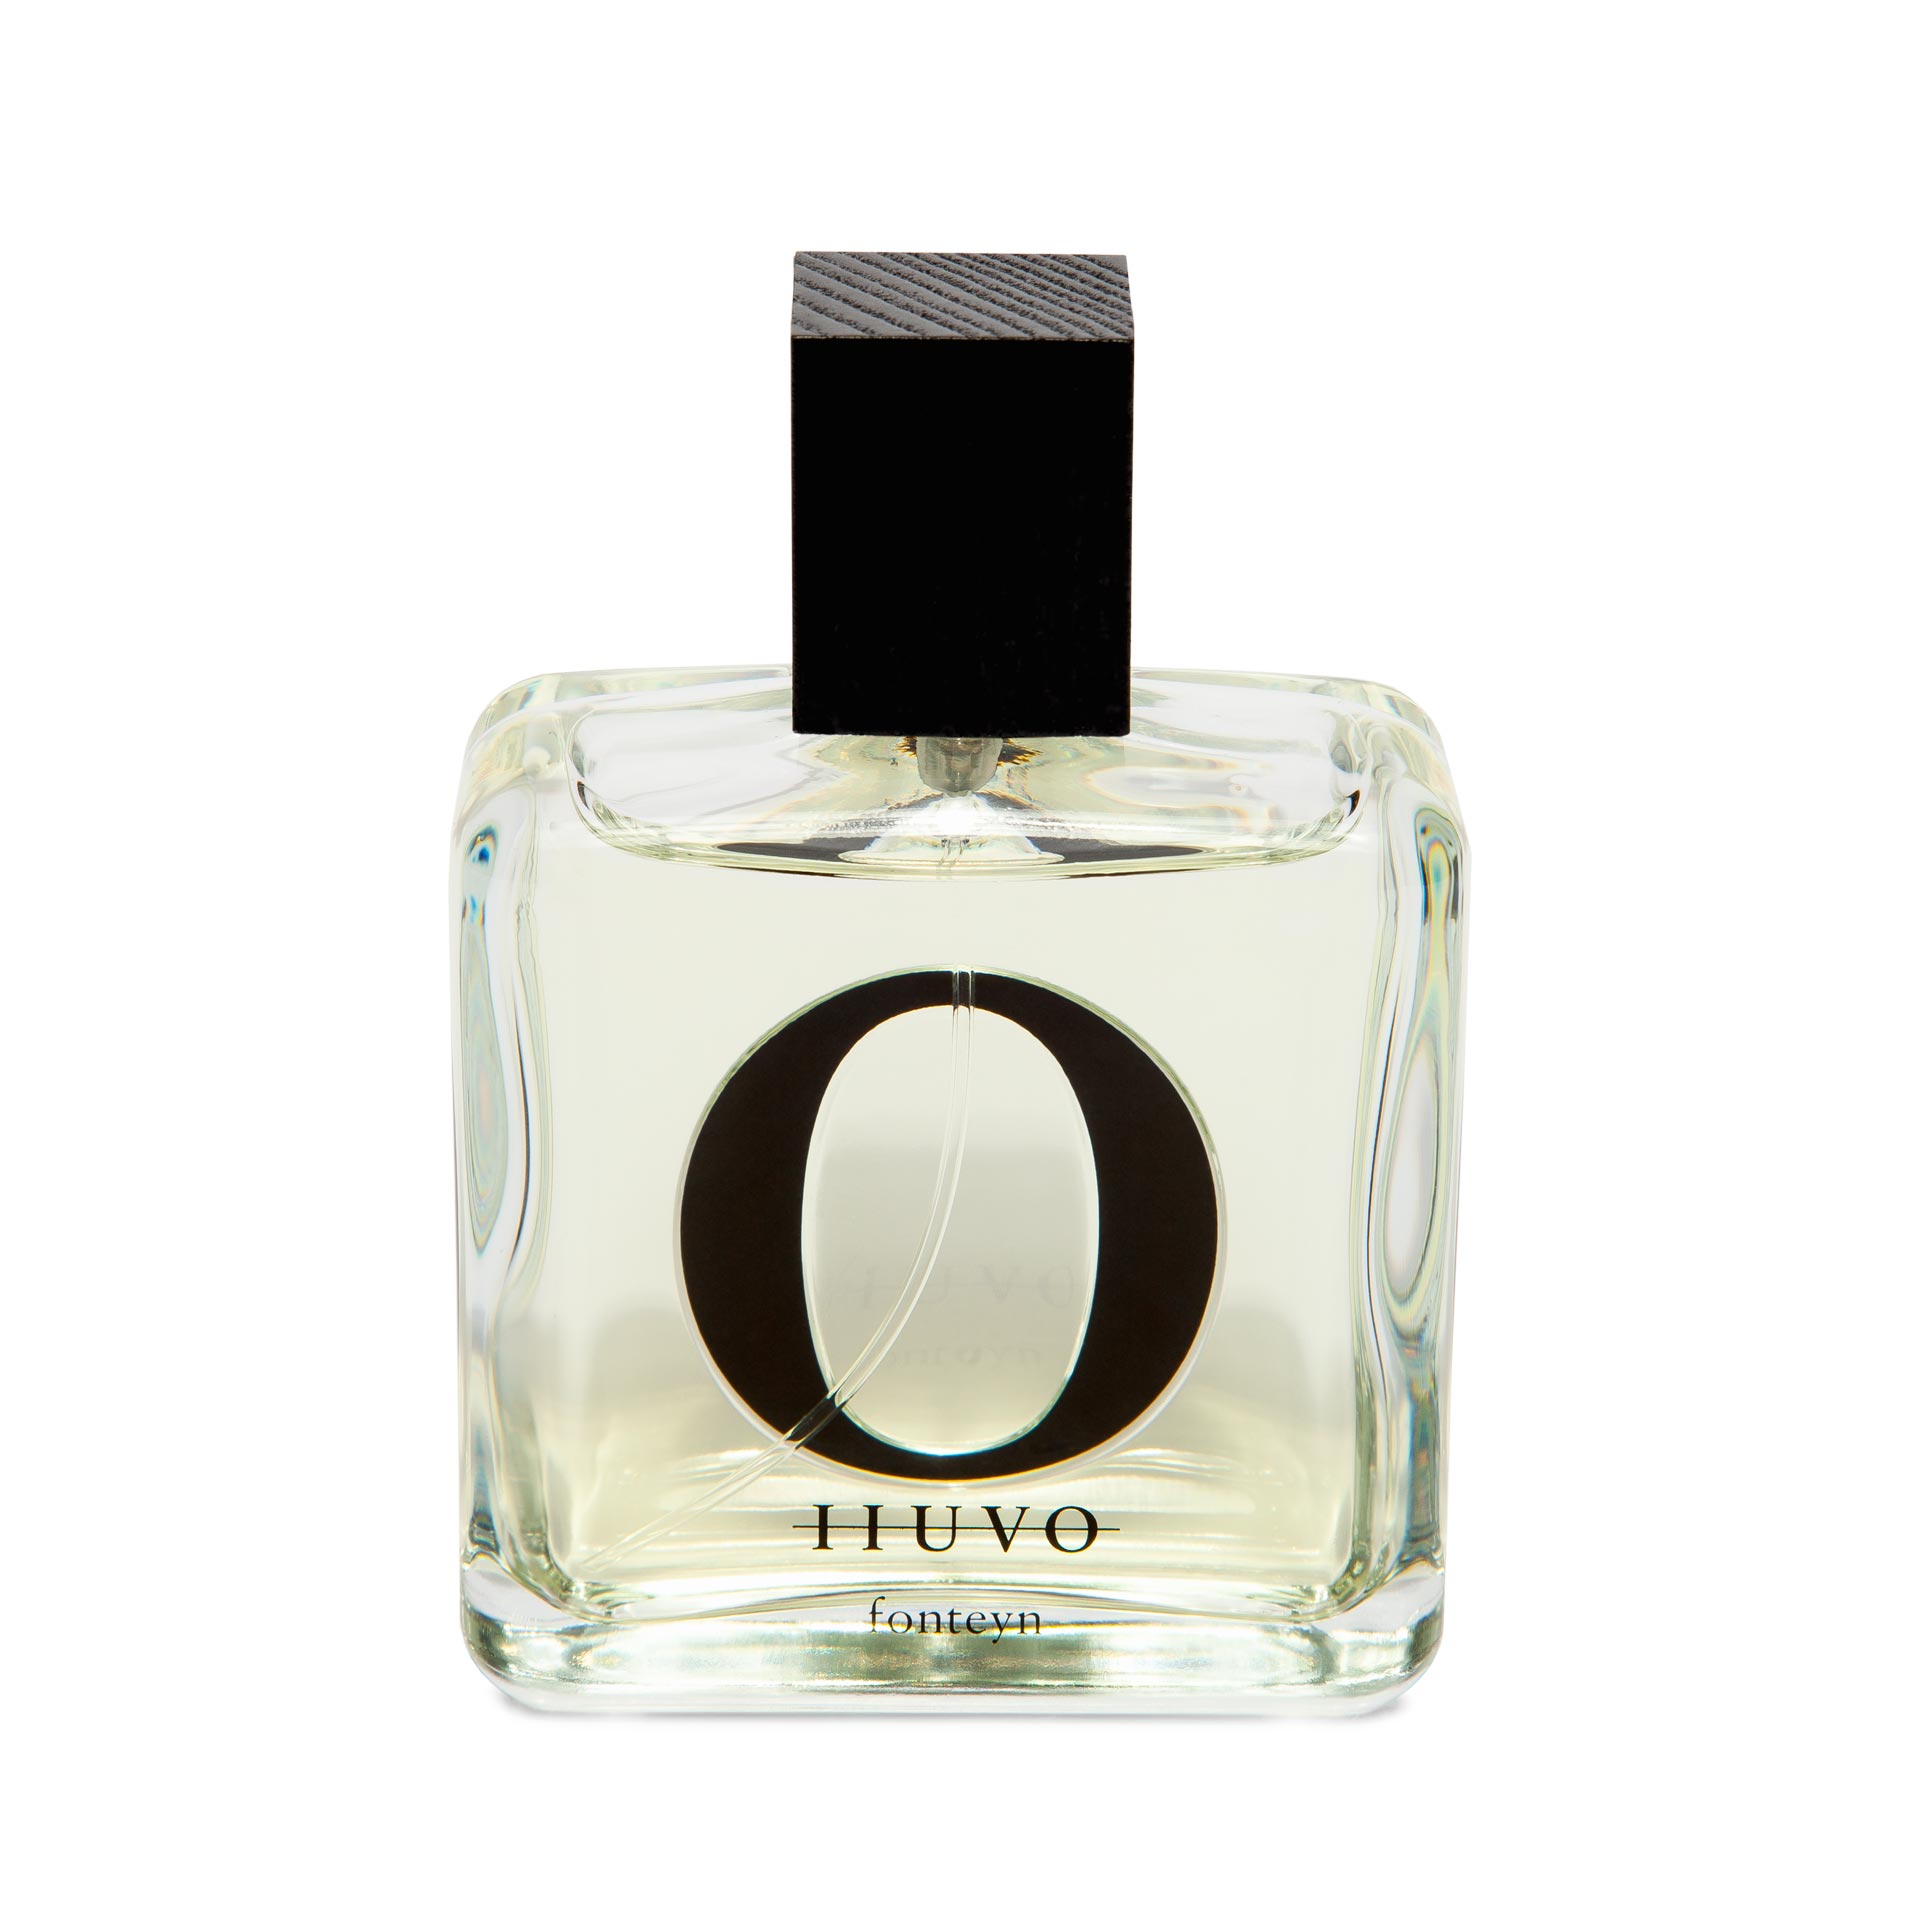 IIUVO アイーボ 香水100ml fonteyn ユニセックス 香水 コスメ・香水・美容 美しい価格